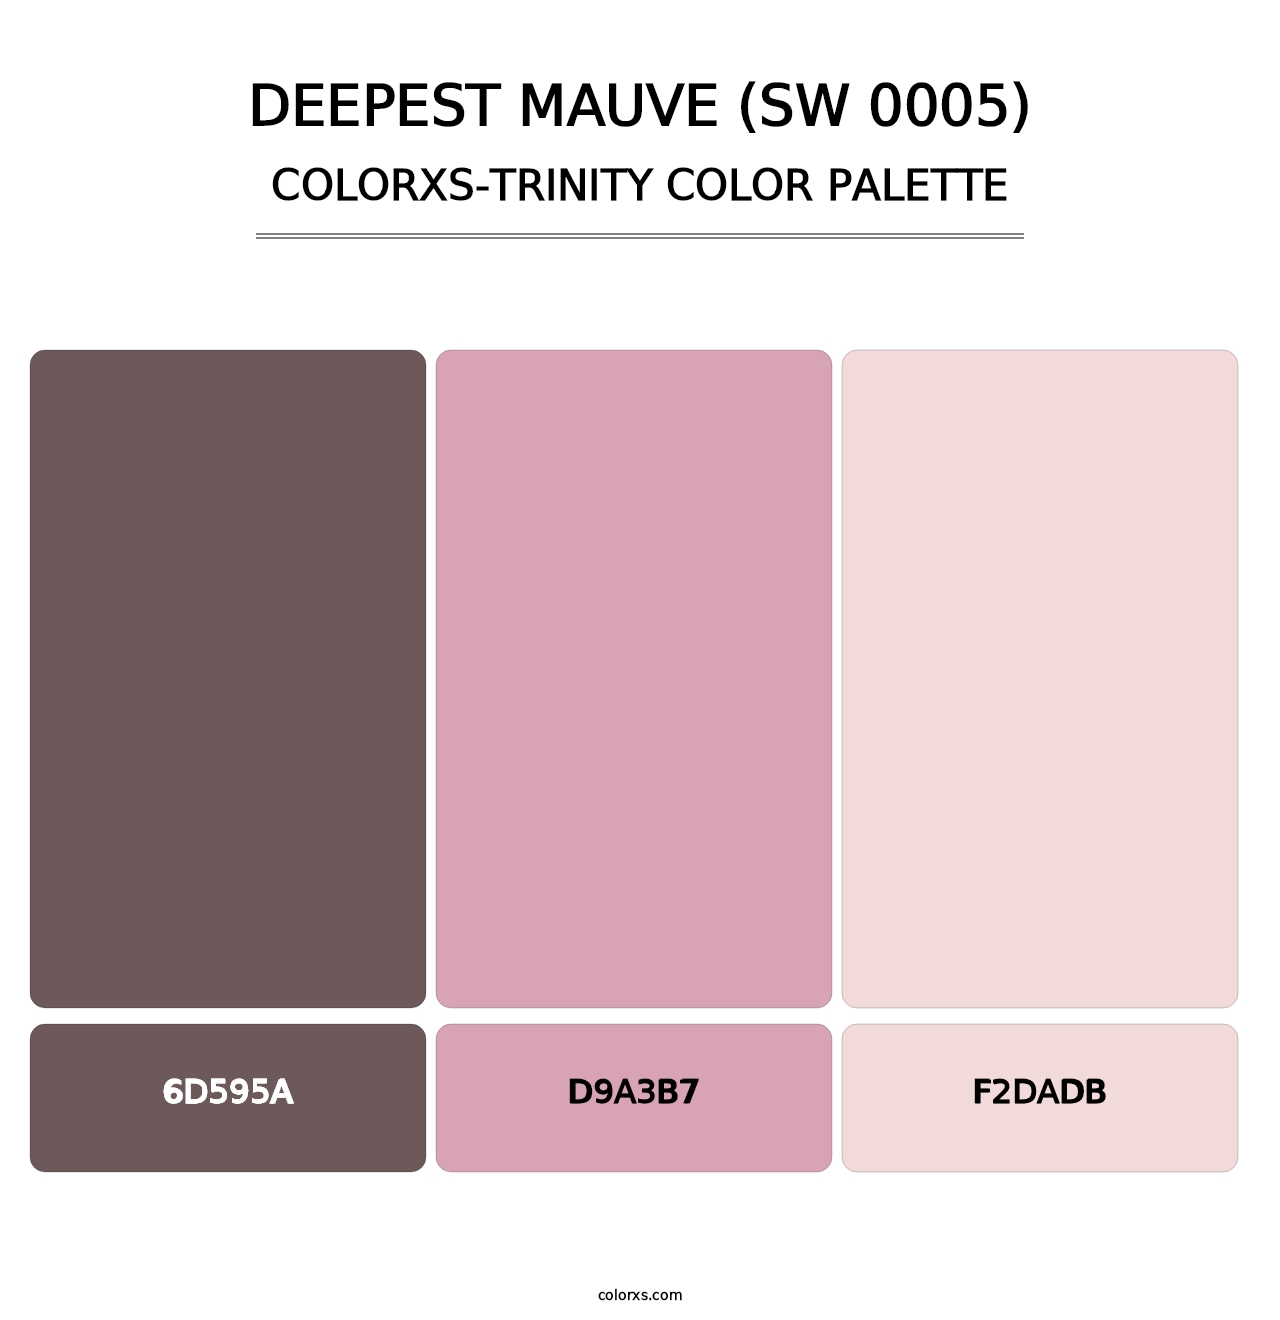 Deepest Mauve (SW 0005) - Colorxs Trinity Palette